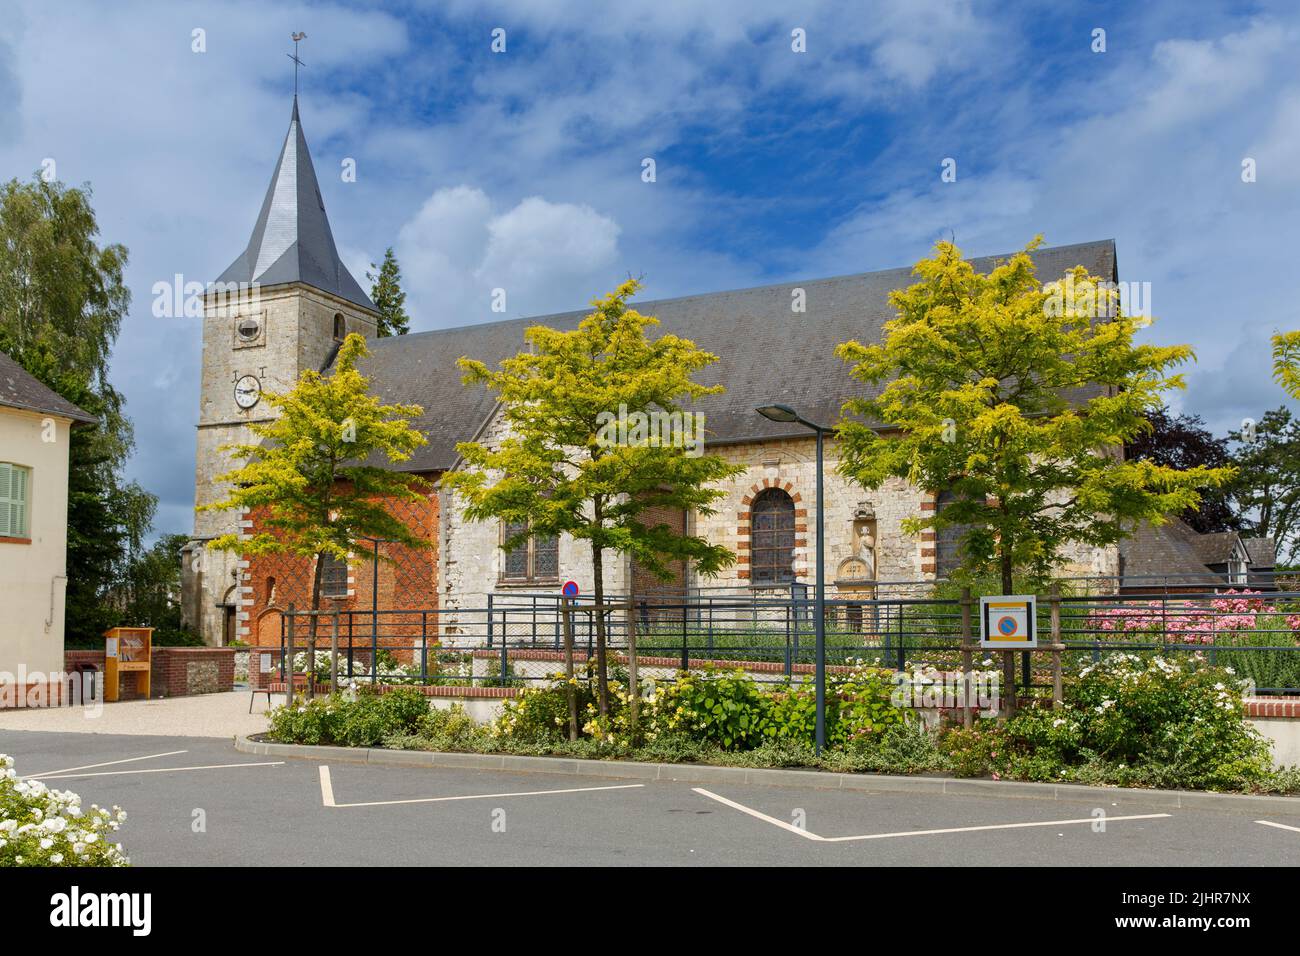 France, Normandy region, Seine-Maritime, Terroir de Caux, Saint-Victor l'Abbaye, Stock Photo